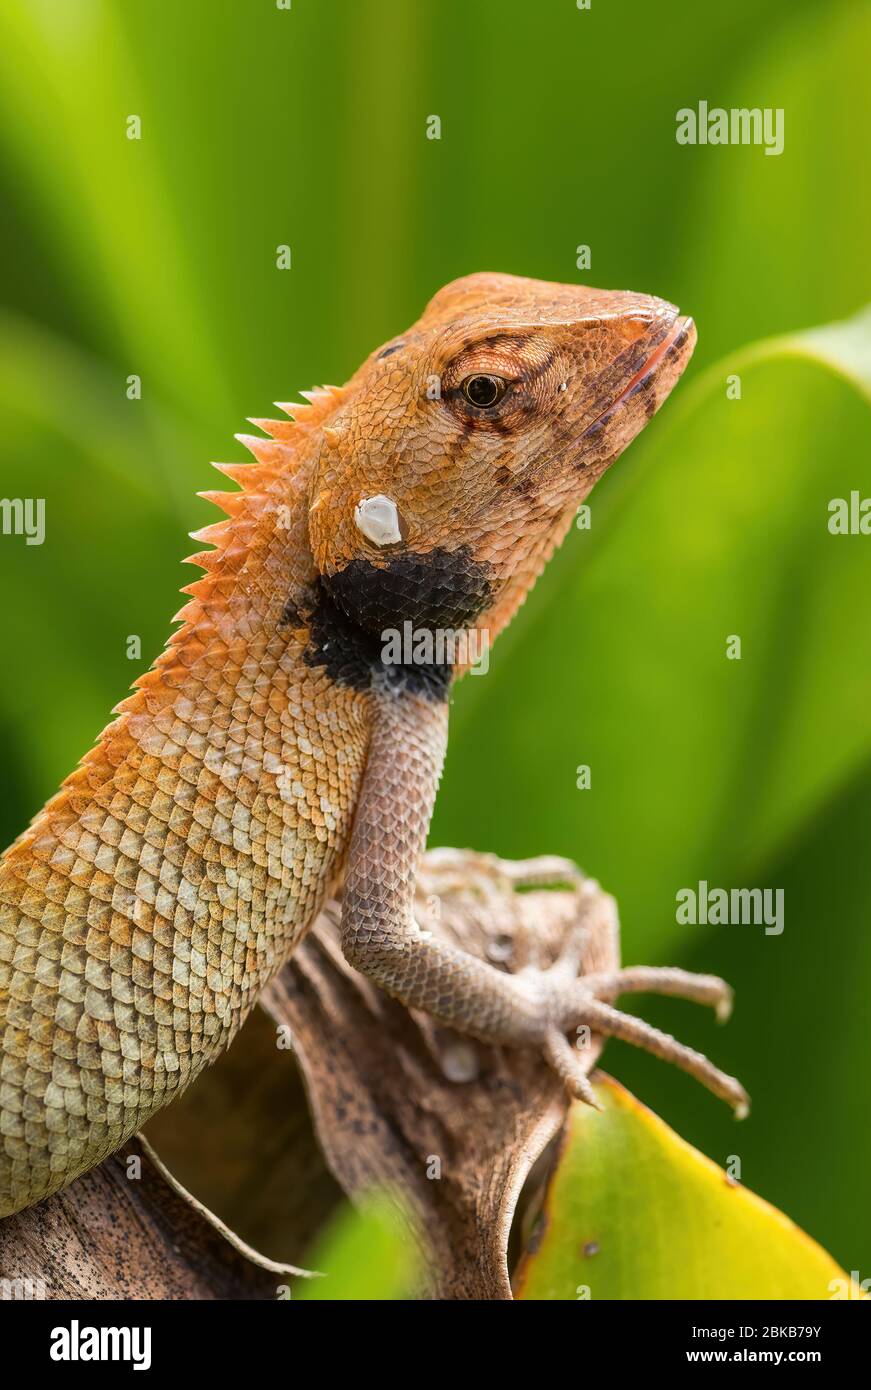 Oriental Garden Lizard - Calotes versicolor, lézard coloré et changeante provenant de forêts et buissons asiatiques, île de Pangkor, Malaisie. Banque D'Images